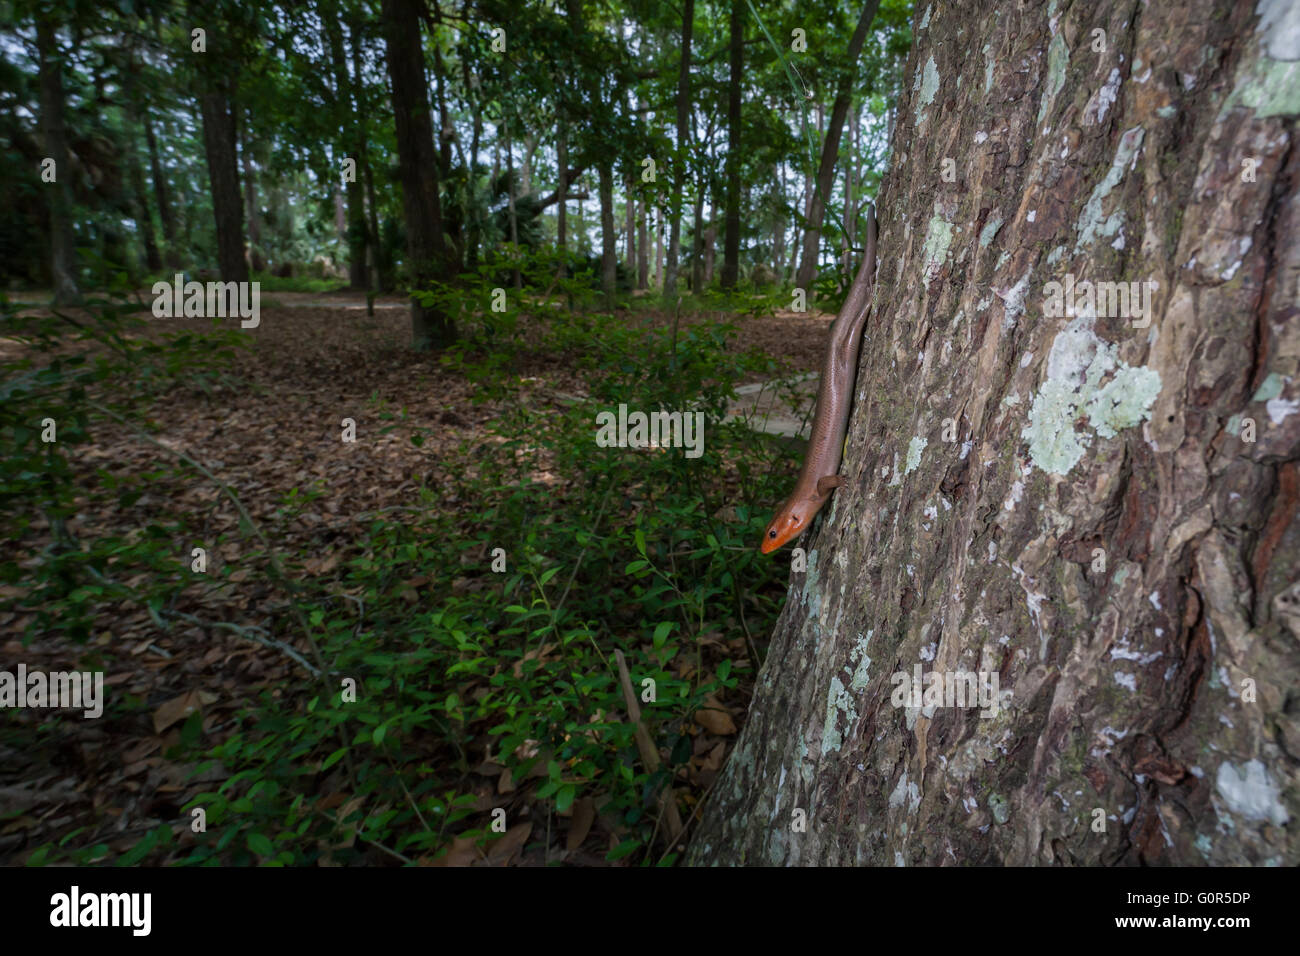 Un maschio di ampia capo-Skink (Plestiodon laticeps) indagini nei suoi dintorni dal lato di una quercia. Foto Stock